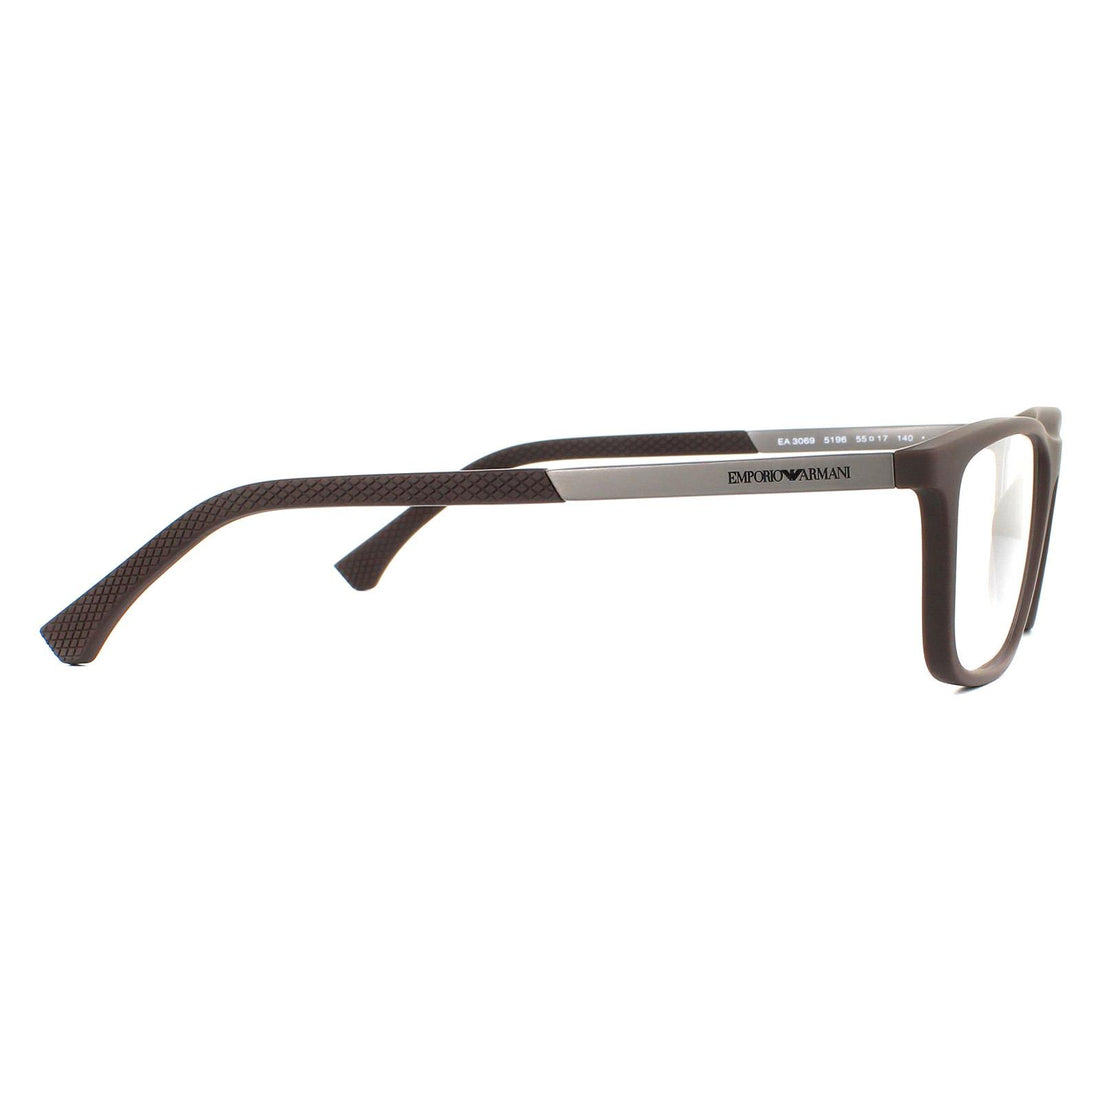 Emporio Armani Glasses Frames EA3069 5196 Rubber Brown Men